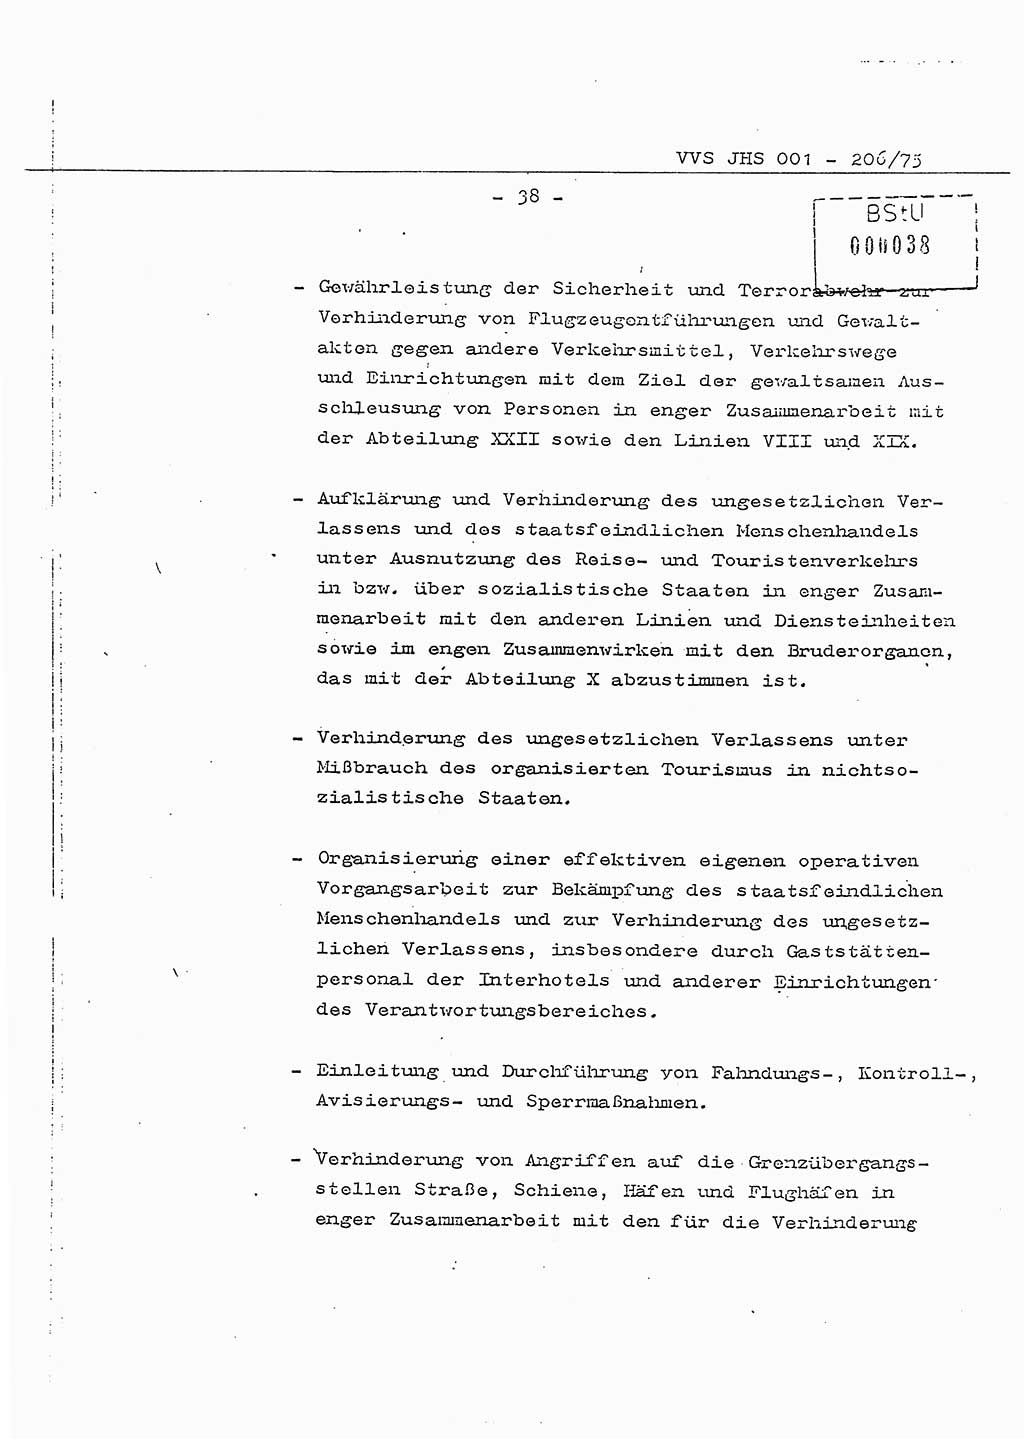 Dissertation Generalmajor Manfred Hummitzsch (Leiter der BV Leipzig), Generalmajor Heinz Fiedler (HA Ⅵ), Oberst Rolf Fister (HA Ⅸ), Ministerium für Staatssicherheit (MfS) [Deutsche Demokratische Republik (DDR)], Juristische Hochschule (JHS), Vertrauliche Verschlußsache (VVS) 001-206/75, Potsdam 1975, Seite 38 (Diss. MfS DDR JHS VVS 001-206/75 1975, S. 38)